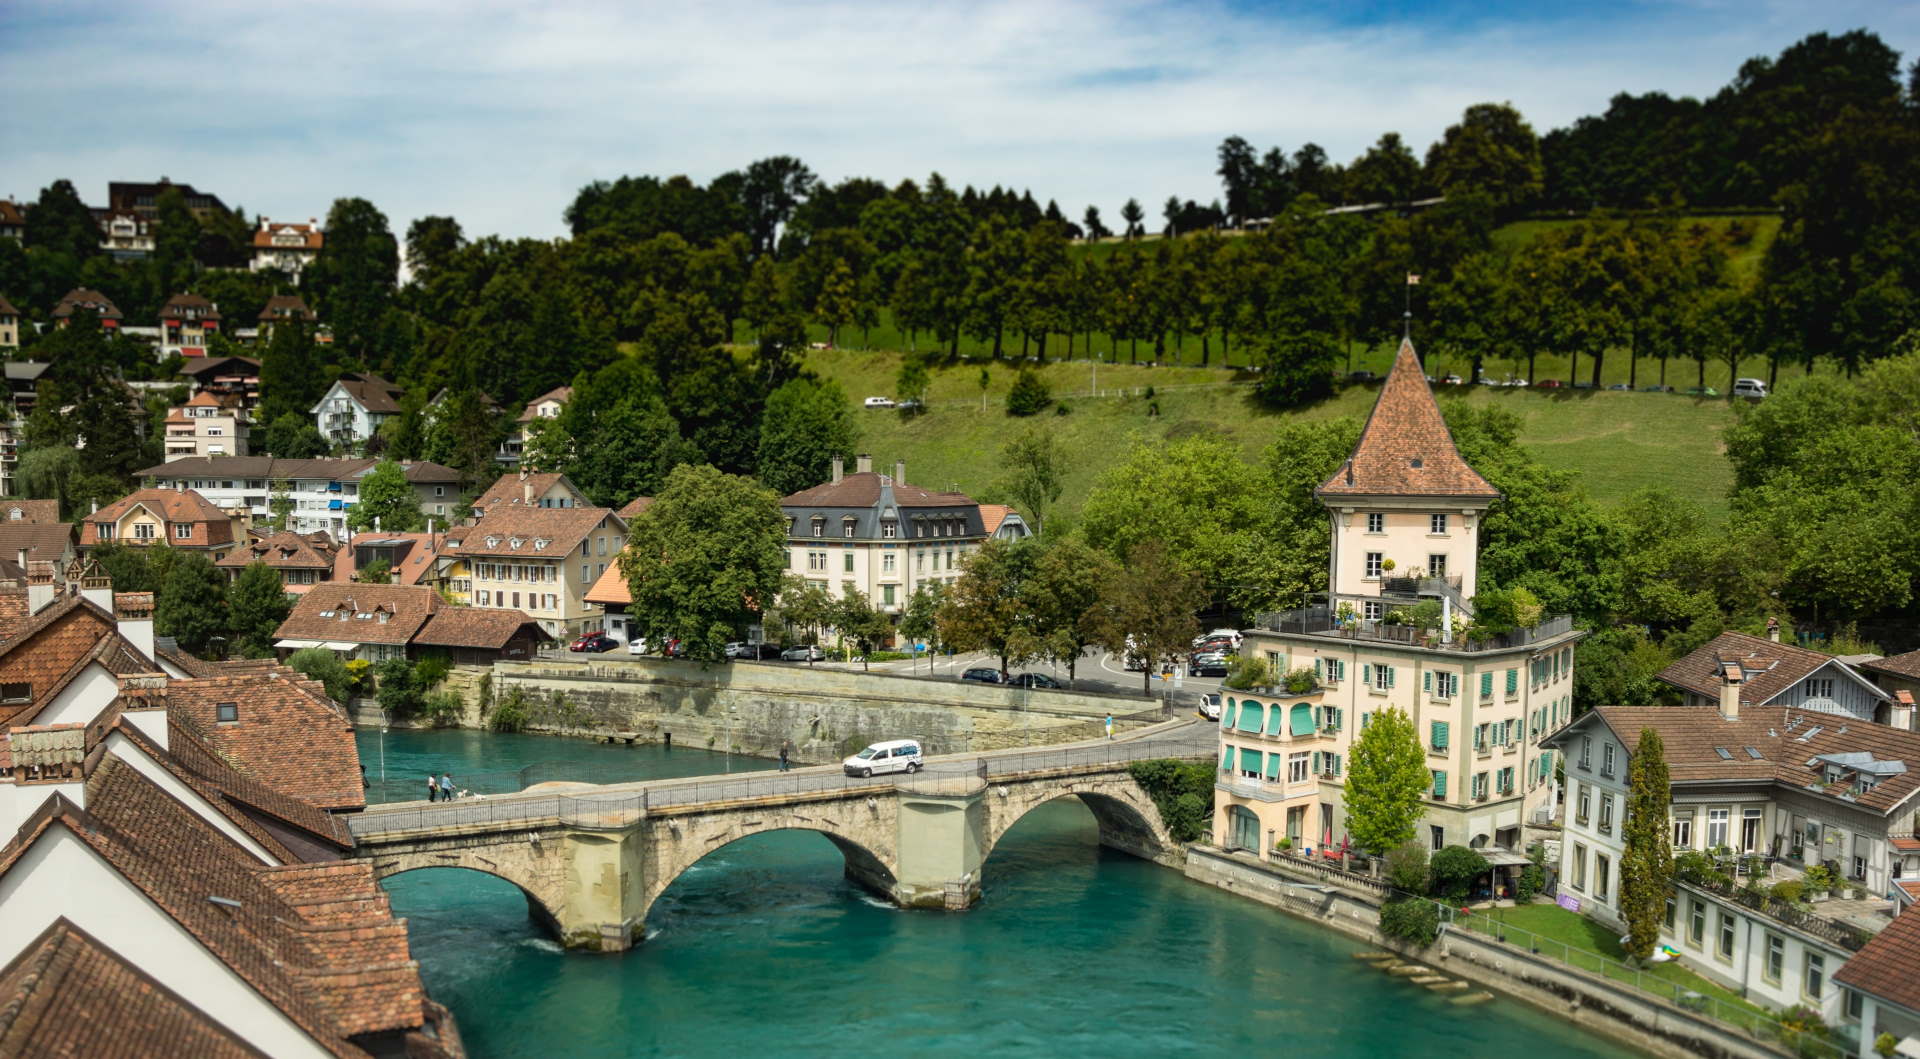 Urlaub in der Schweiz